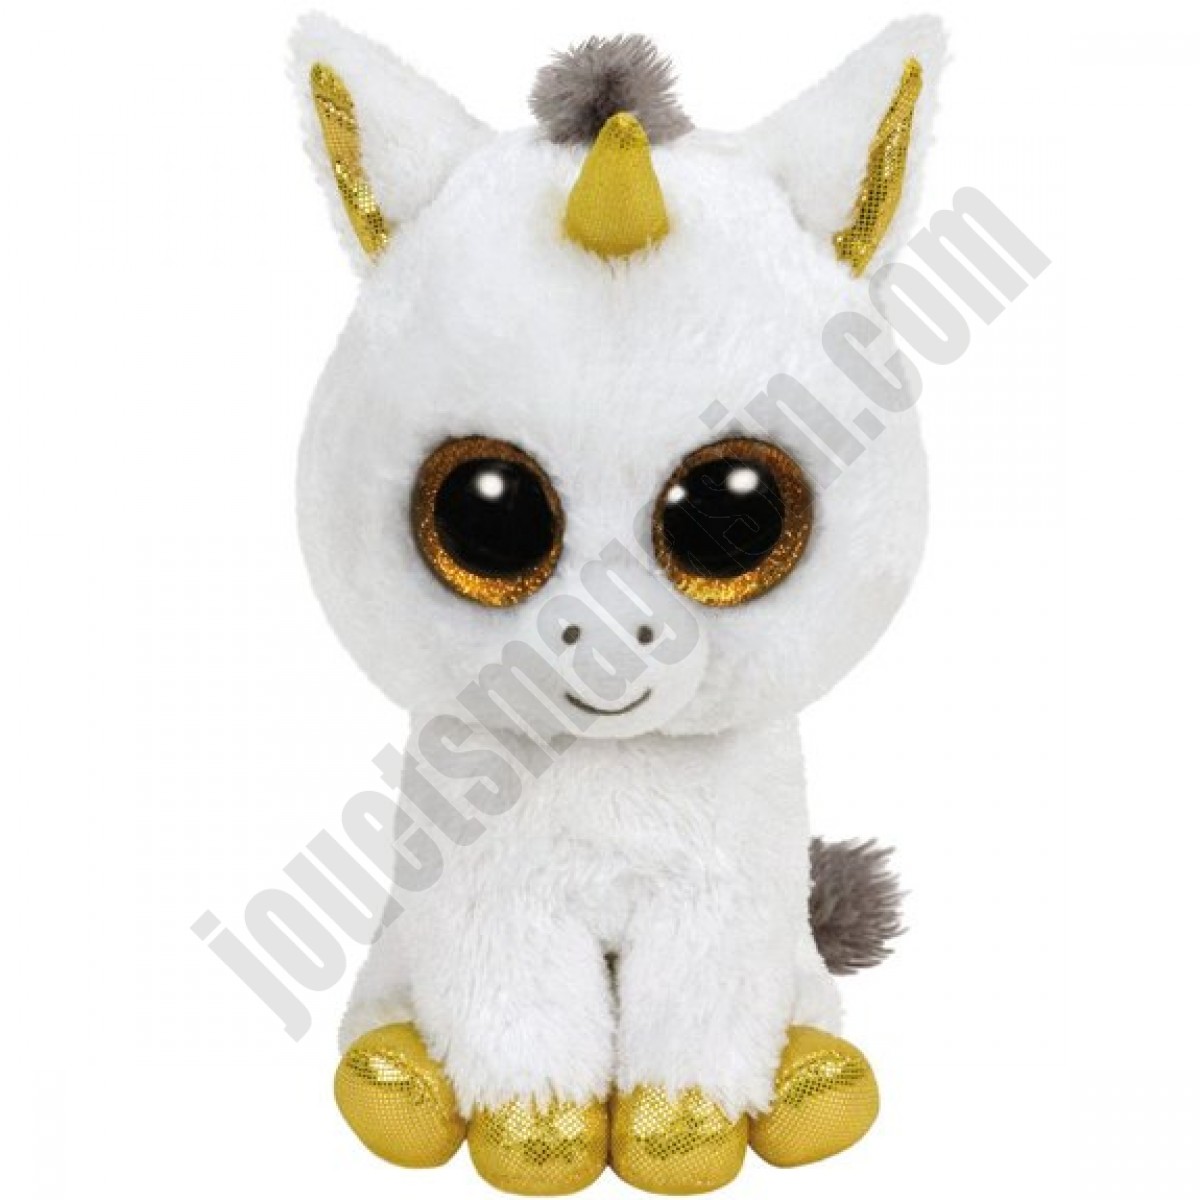 Beanie Boo's 15 cm : Pegasus la licorne ◆◆◆ Nouveau - Beanie Boo's 15 cm : Pegasus la licorne ◆◆◆ Nouveau